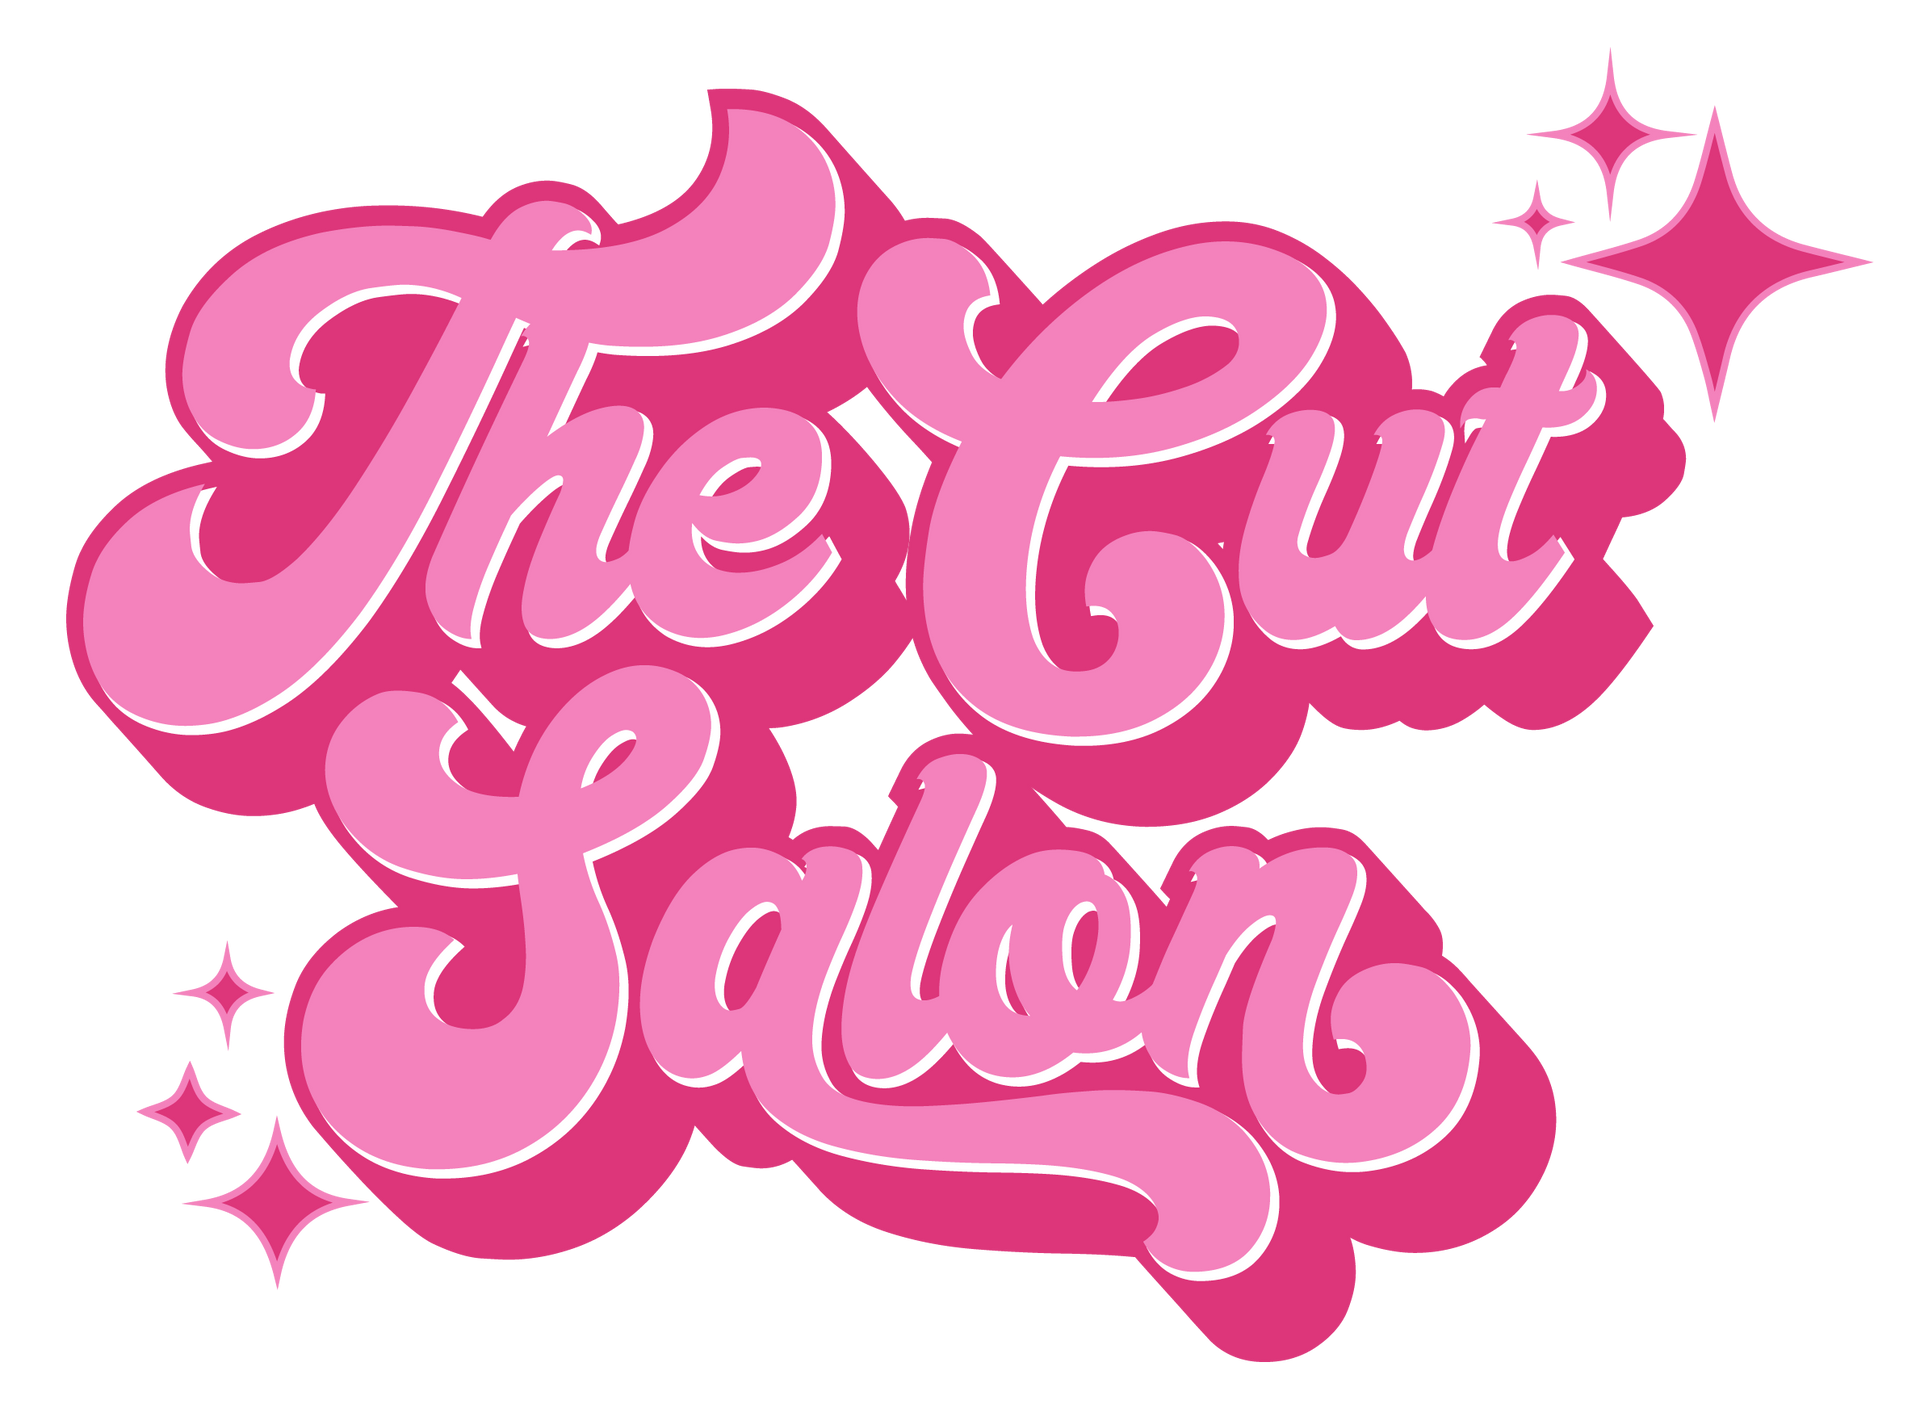 The Cut Salon